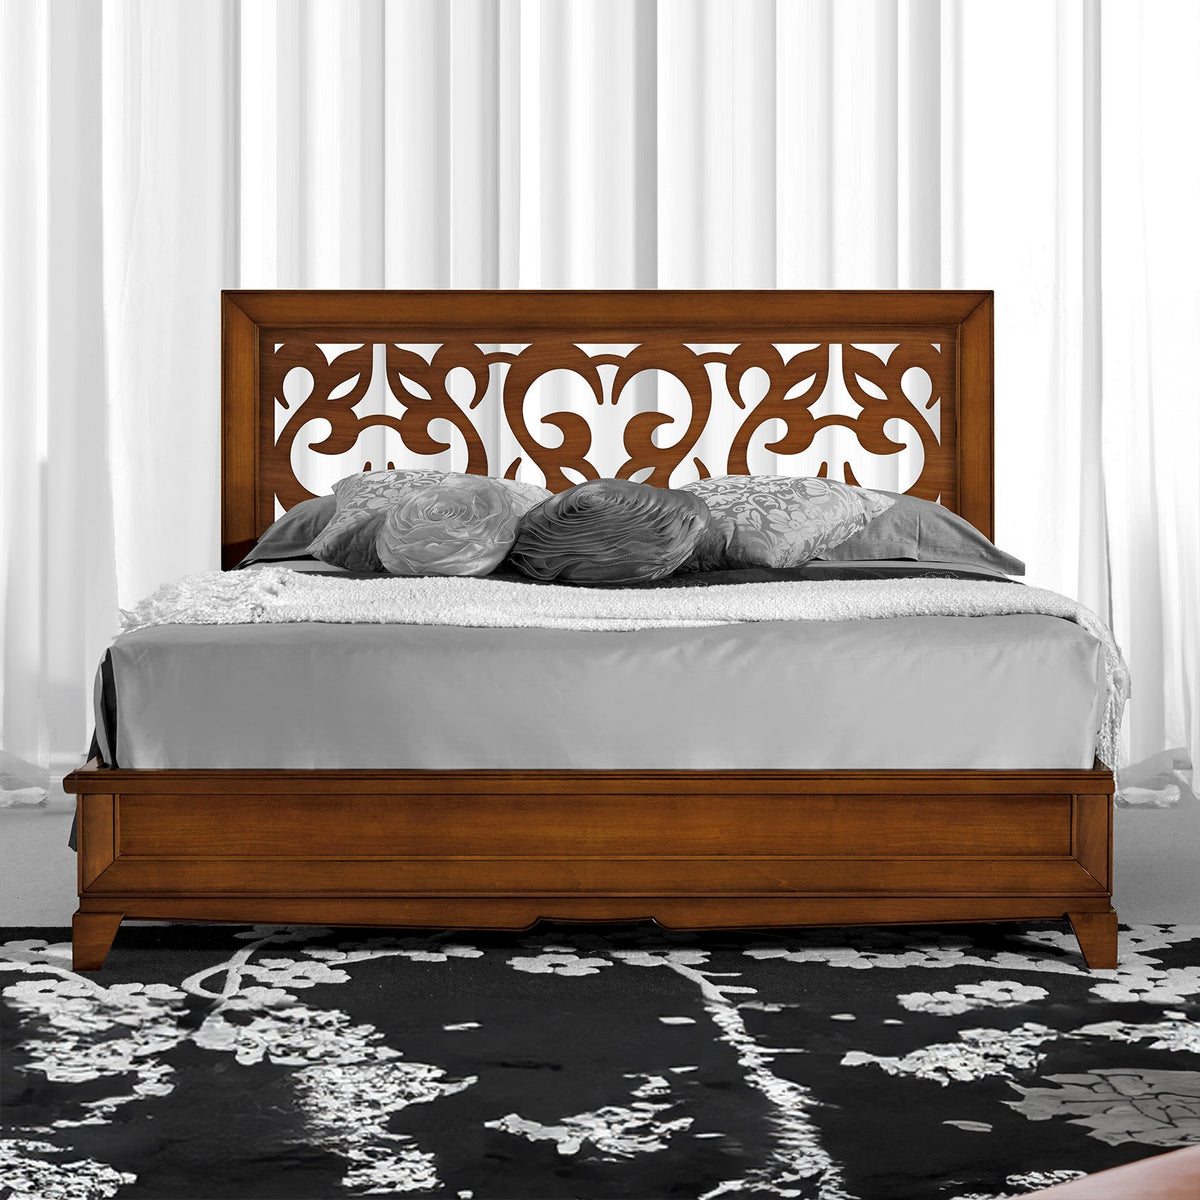 Классическая деревянная двуспальная кровать с перфорированным изголовьем W 194 D 211 см Collezione Arte D'Este Piombini